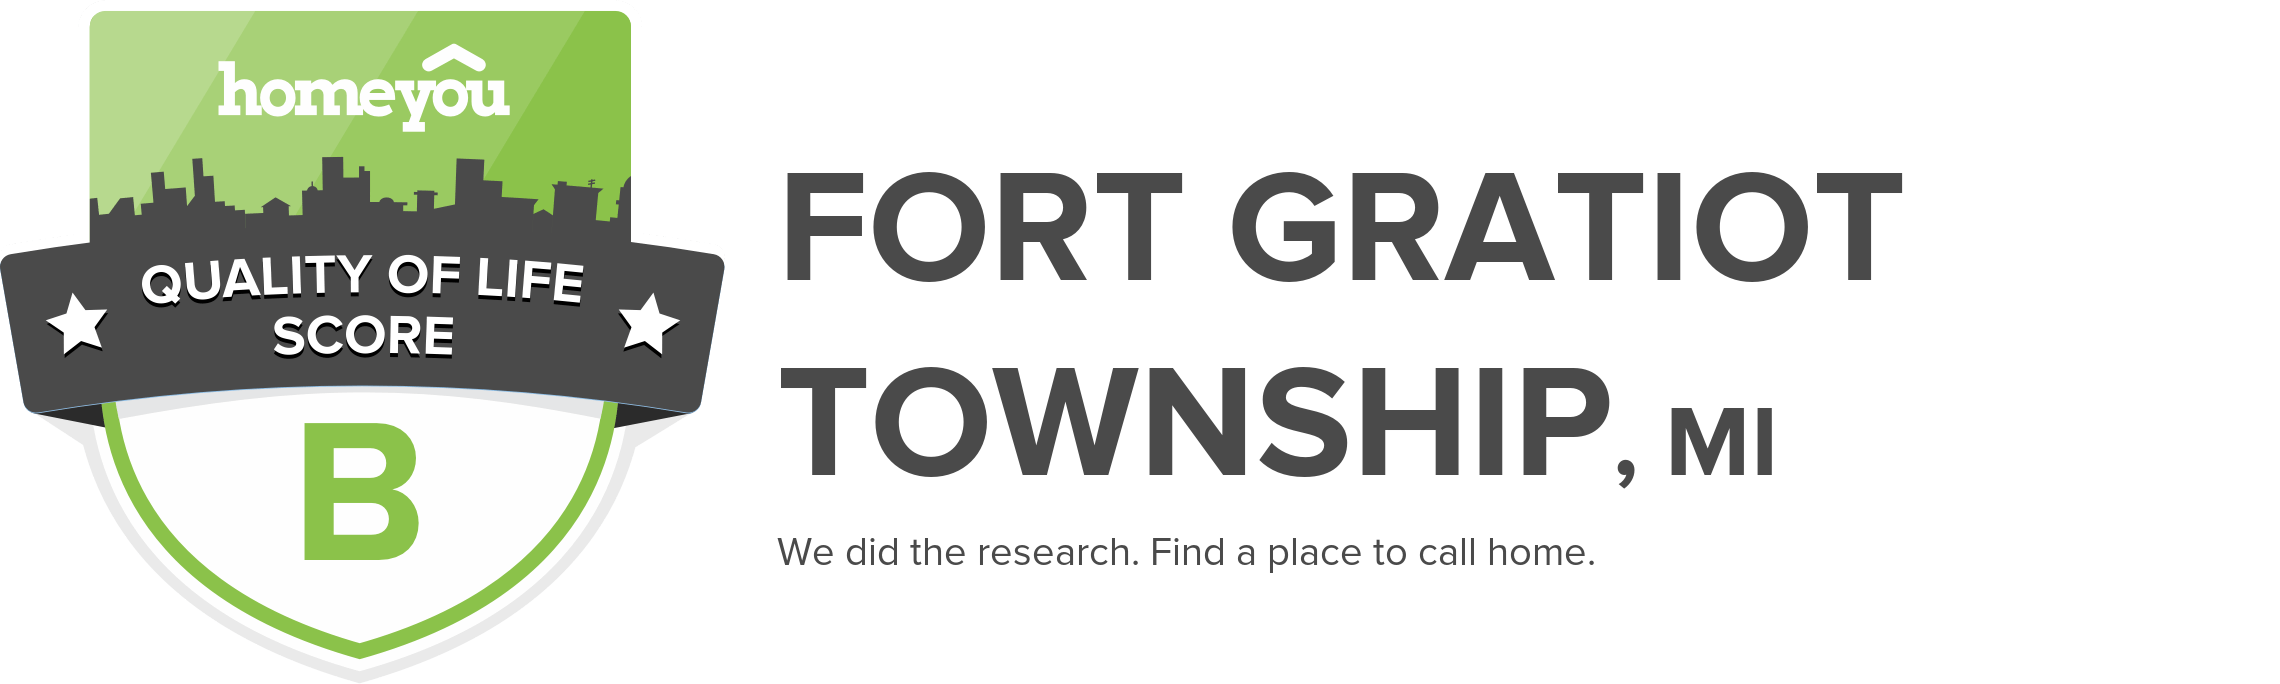 Fort Gratiot township, MI